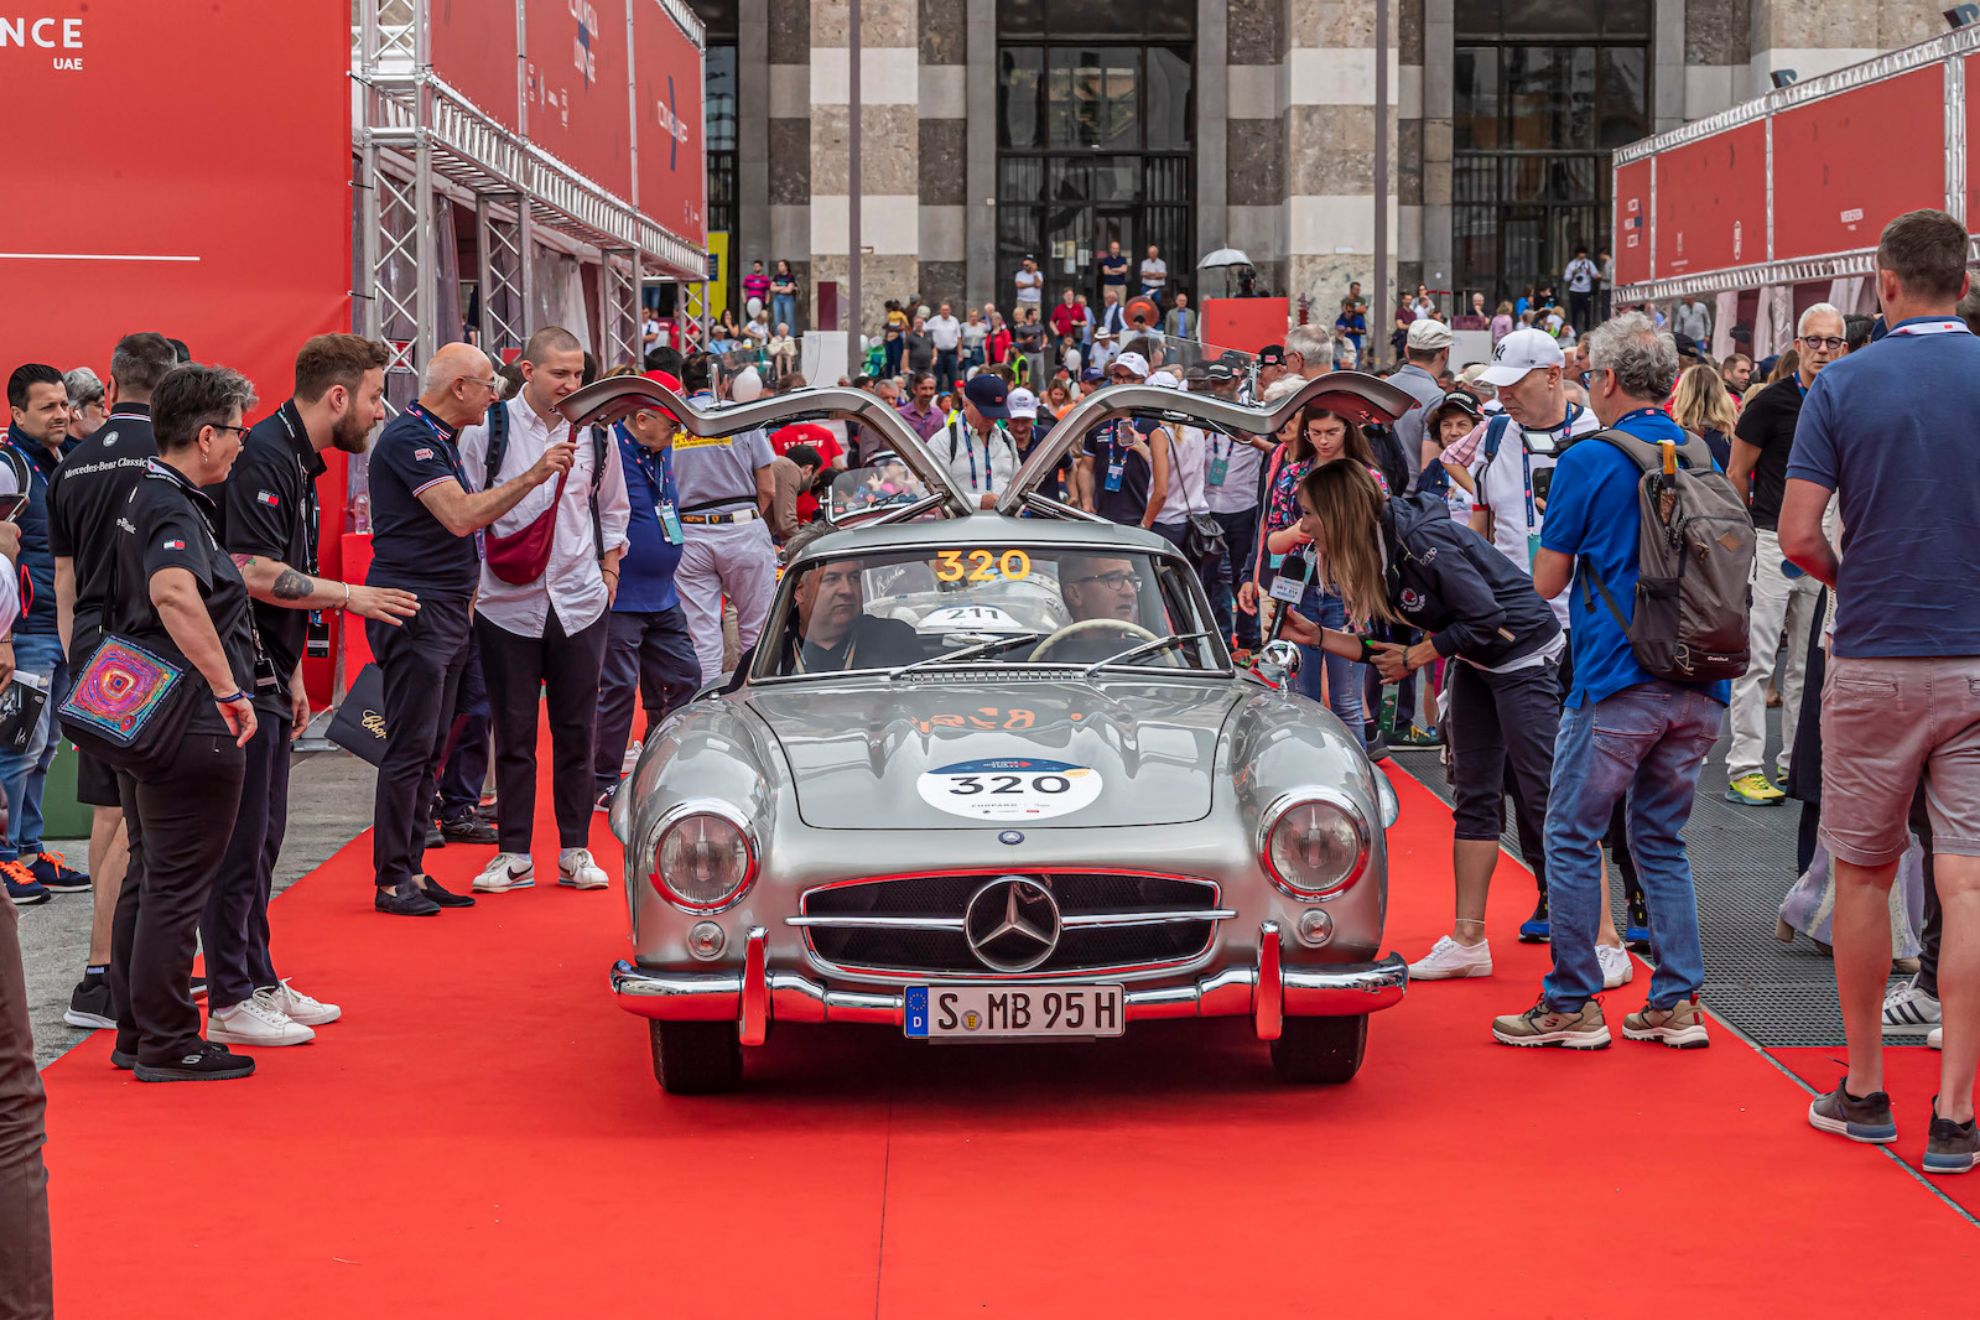 Los coches Eco se mezclaron con los históricos que componen la 1000 Miglia tradicional.